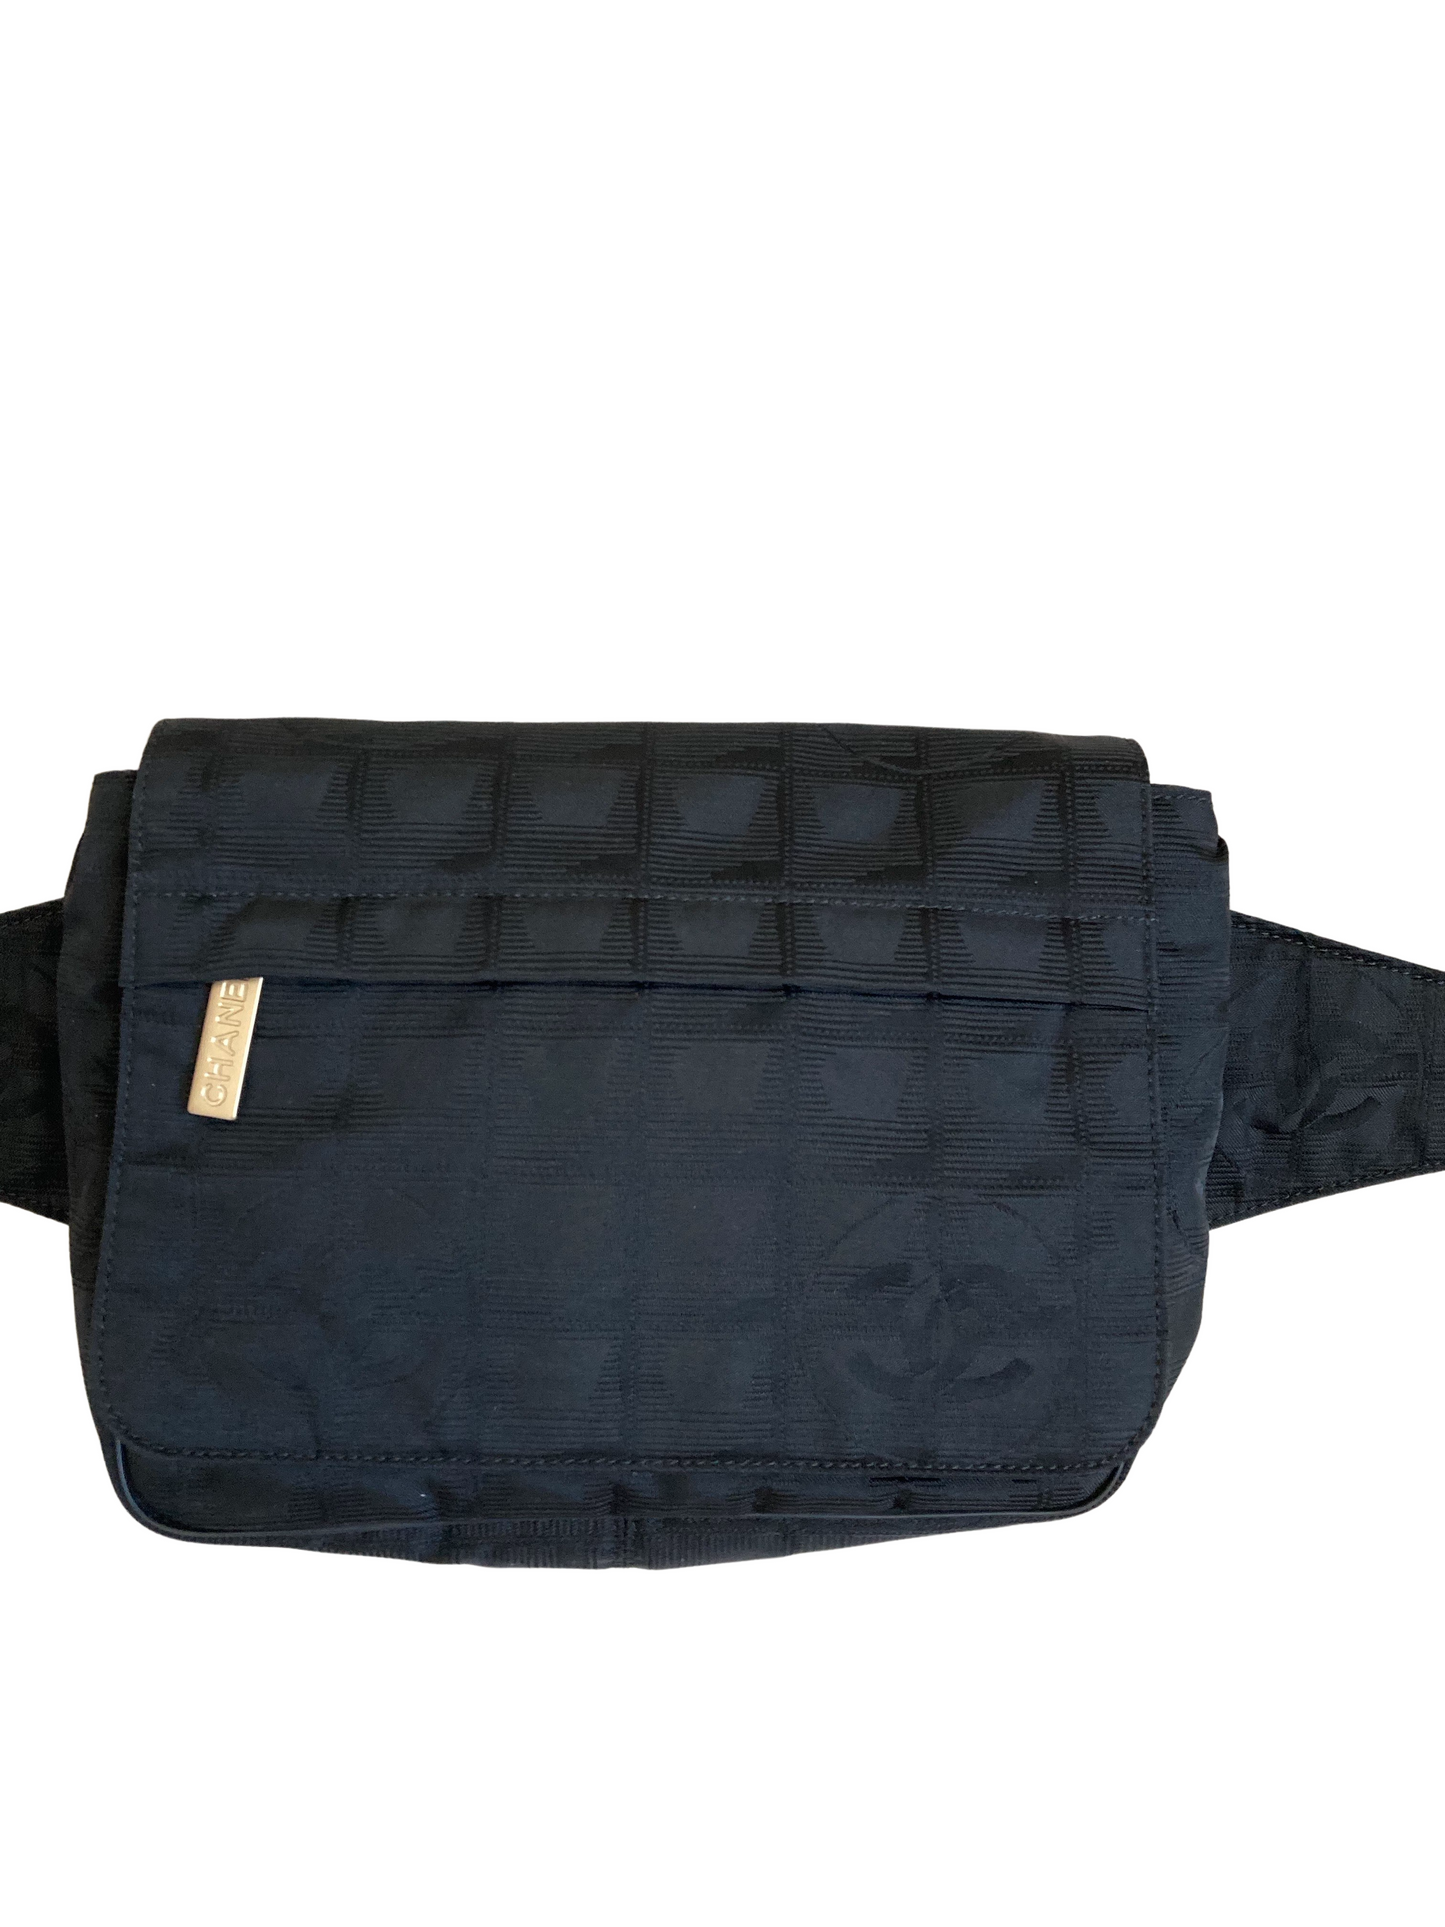 Chanel Travel Line Black Nylon Belt Bag